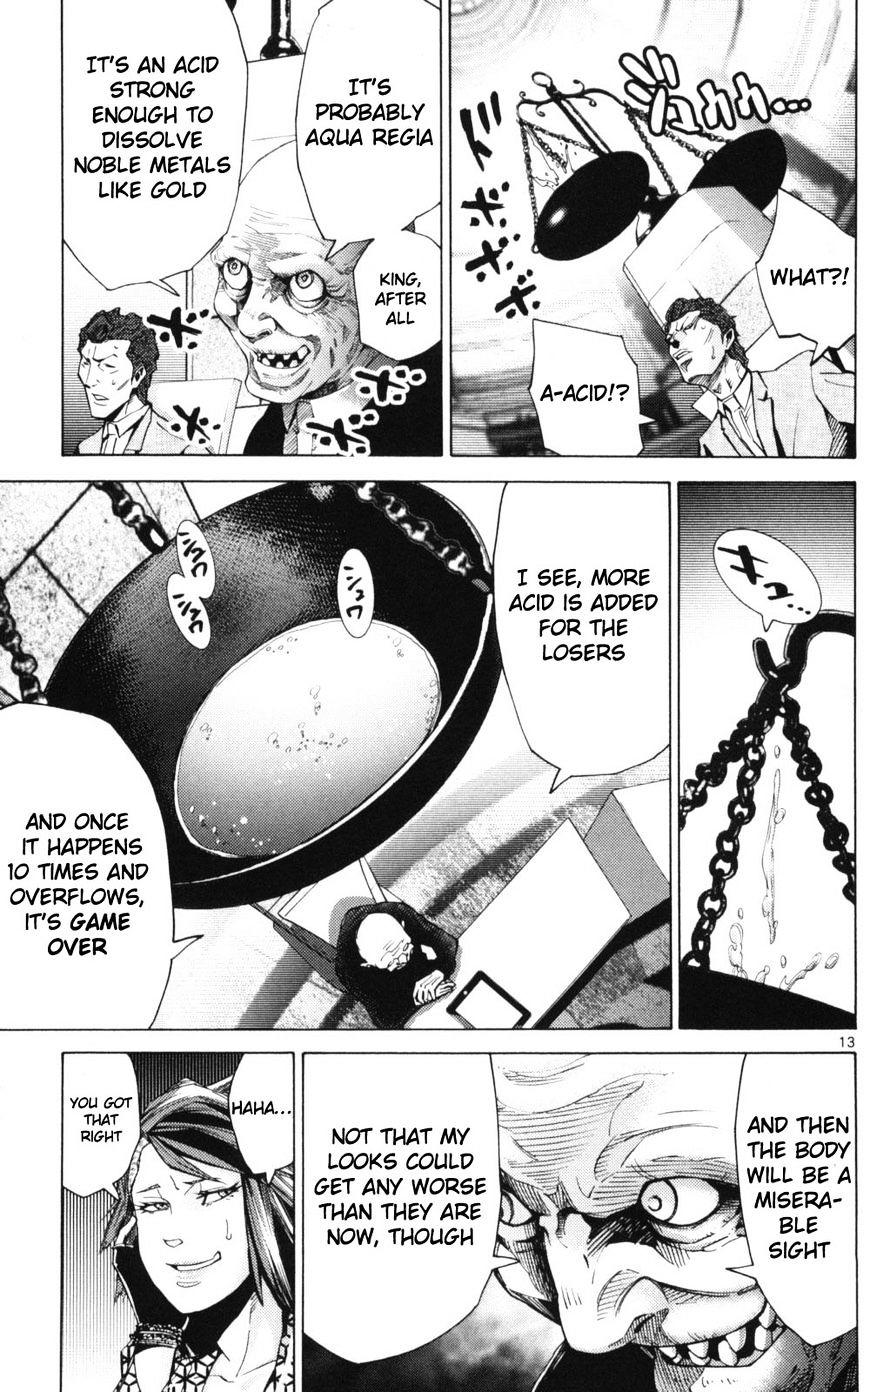 Imawa No Kuni No Alice Chapter 51.2 : Side Story 6 - King Of Diamonds (2) page 13 - Mangakakalot